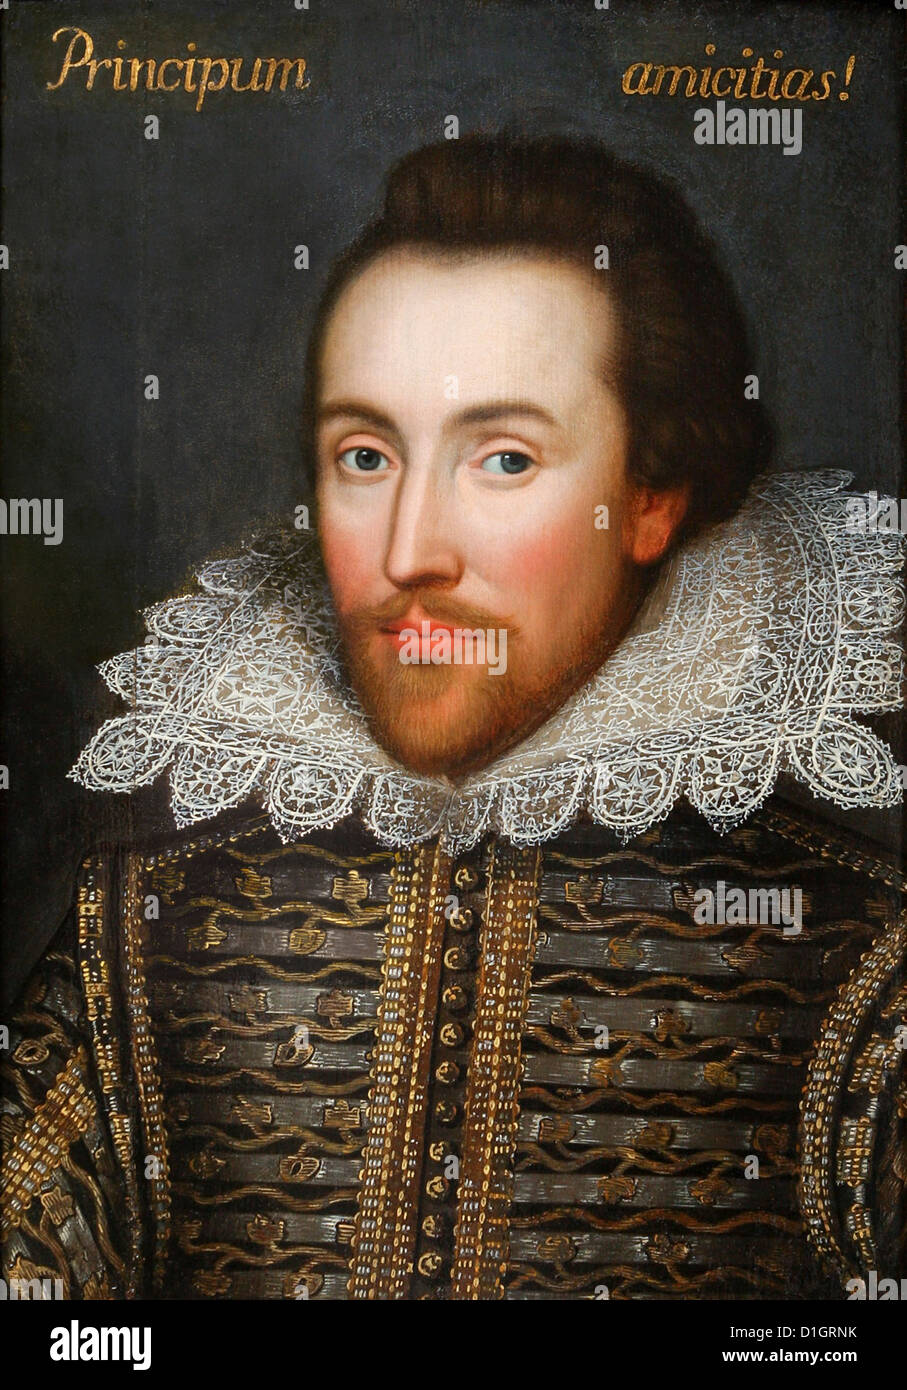 Shakespeare. Retrato de William Shakespeare, conocido como el retrato Cobbe, hecho de la vida en 1610. Foto de stock